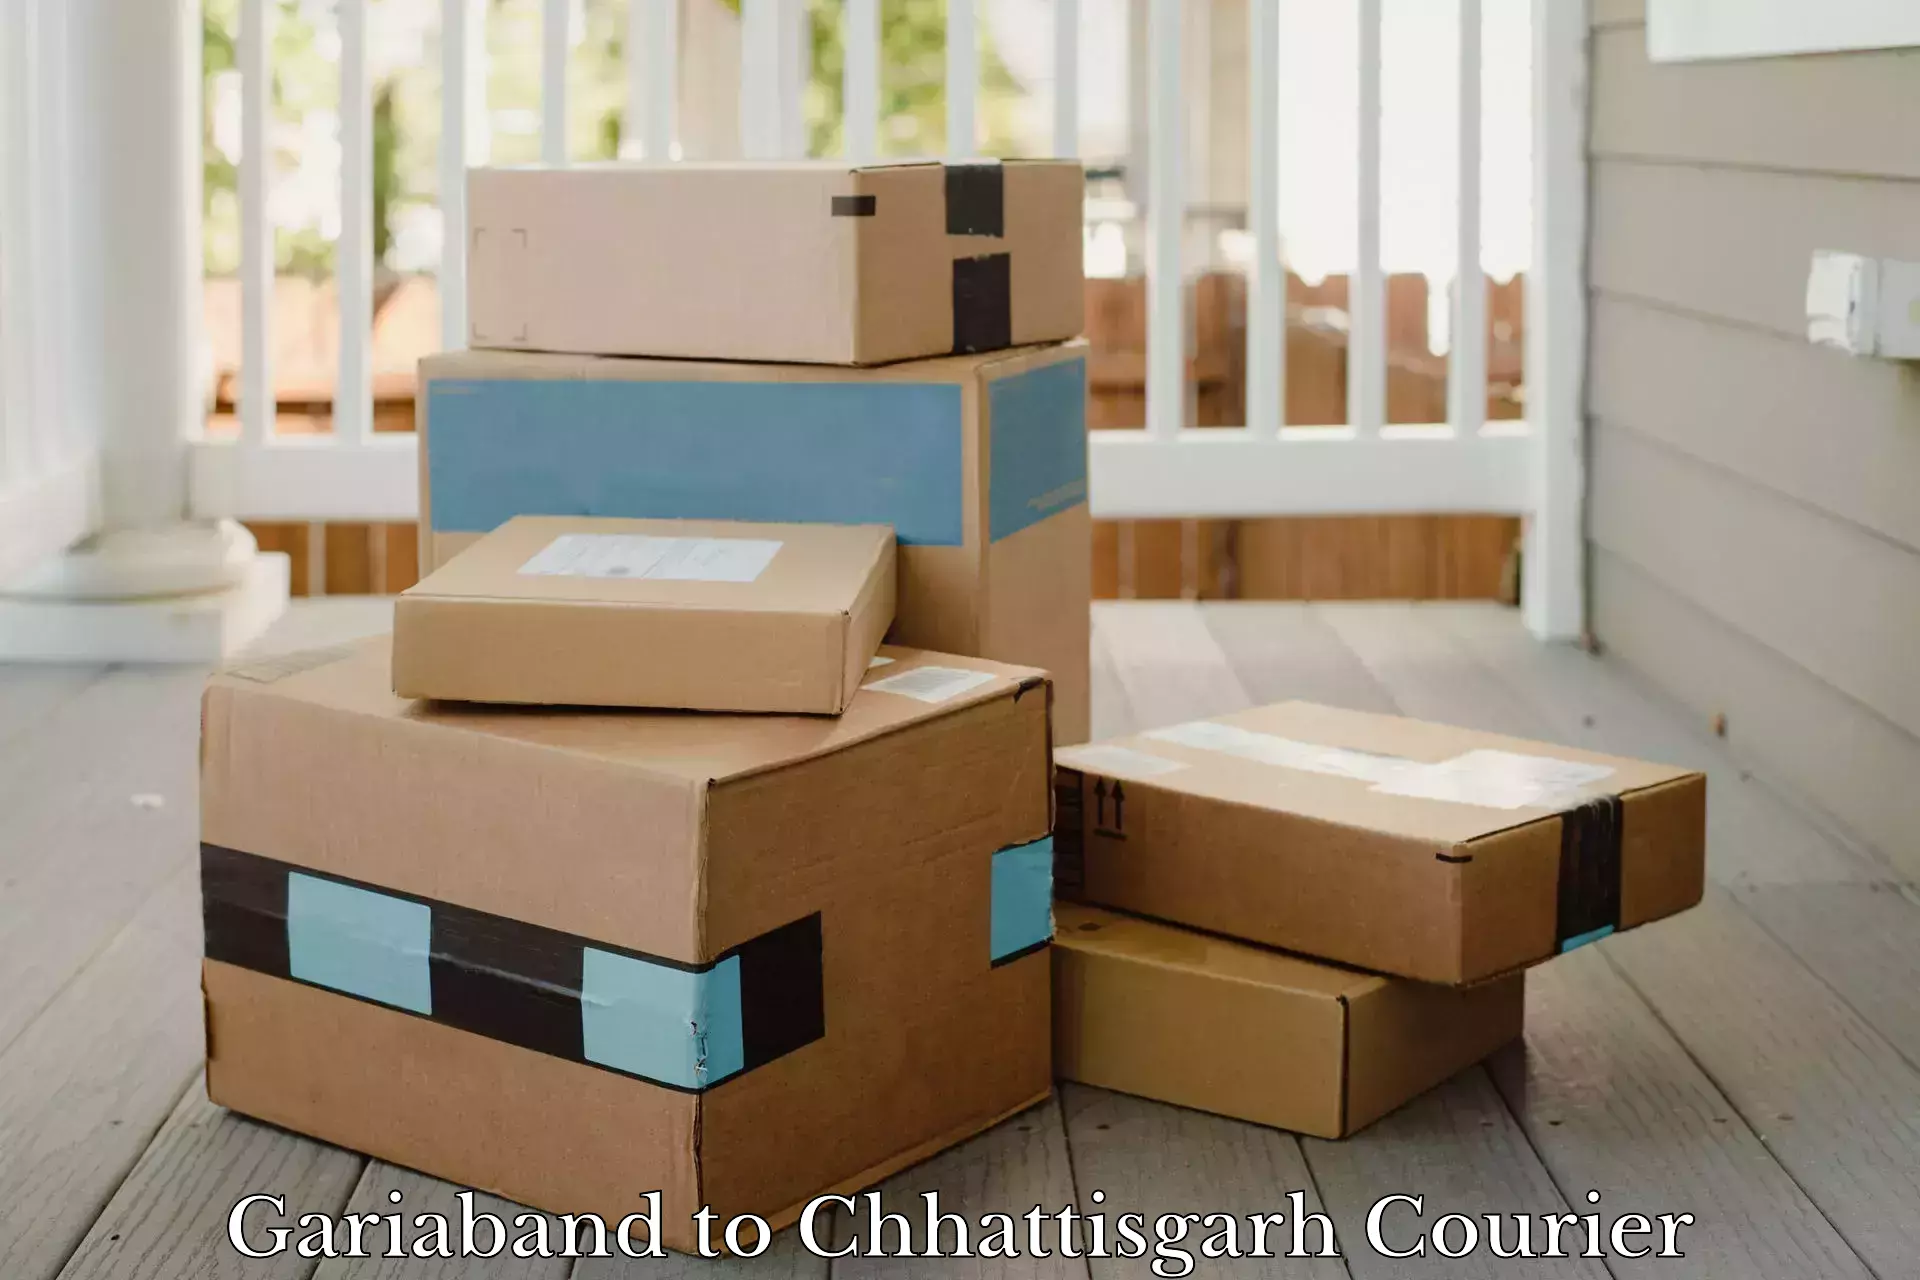 Cargo courier service Gariaband to Chhattisgarh